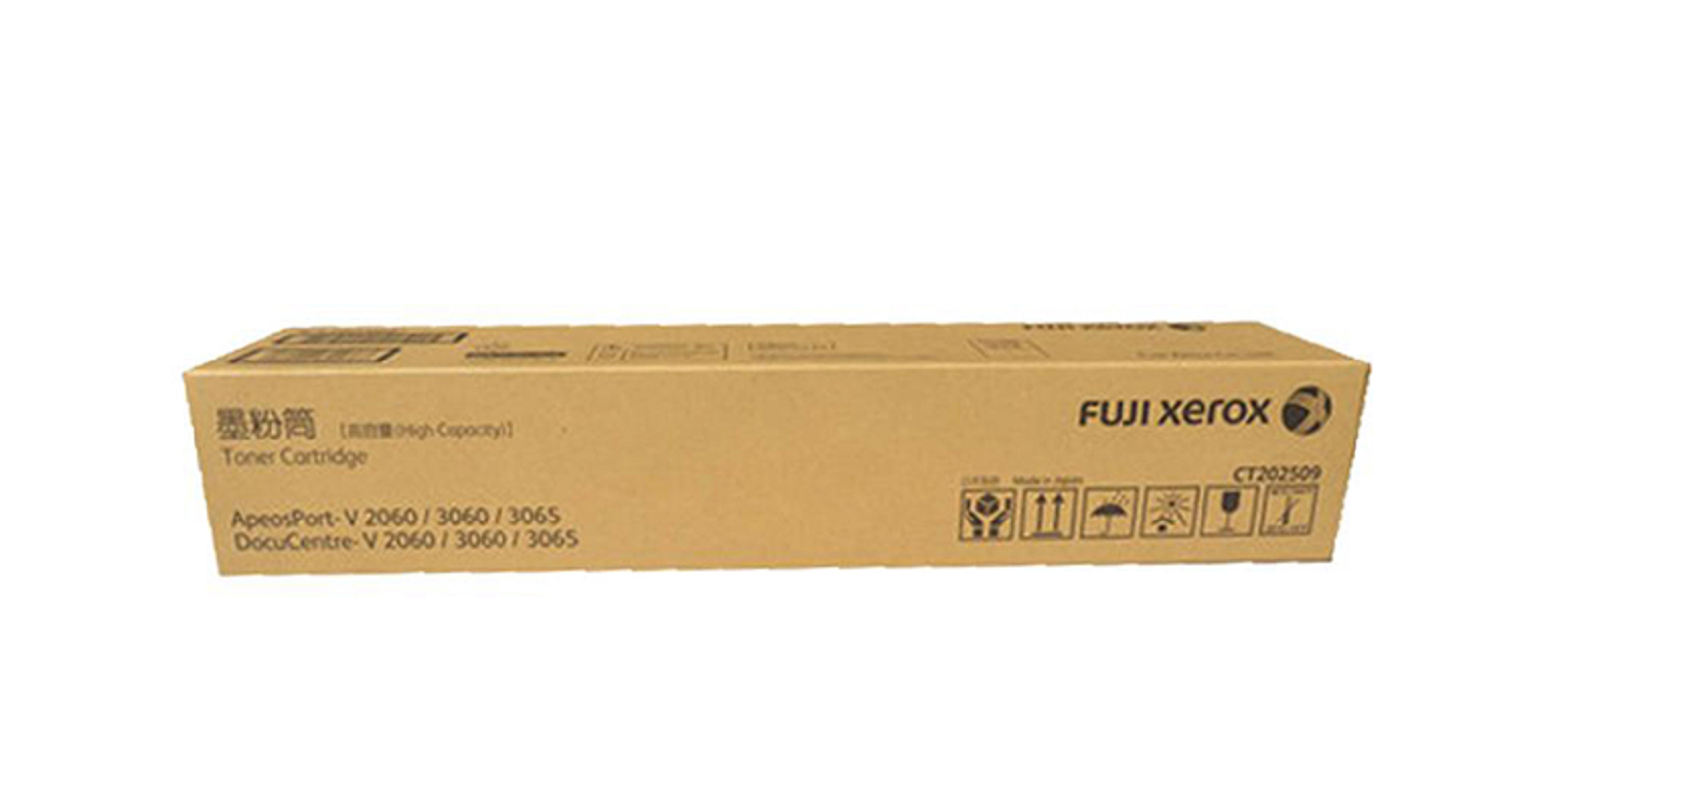 富士施乐 黑色墨盒 CT202509 (单位:盒)适用于:2060/3060/3065